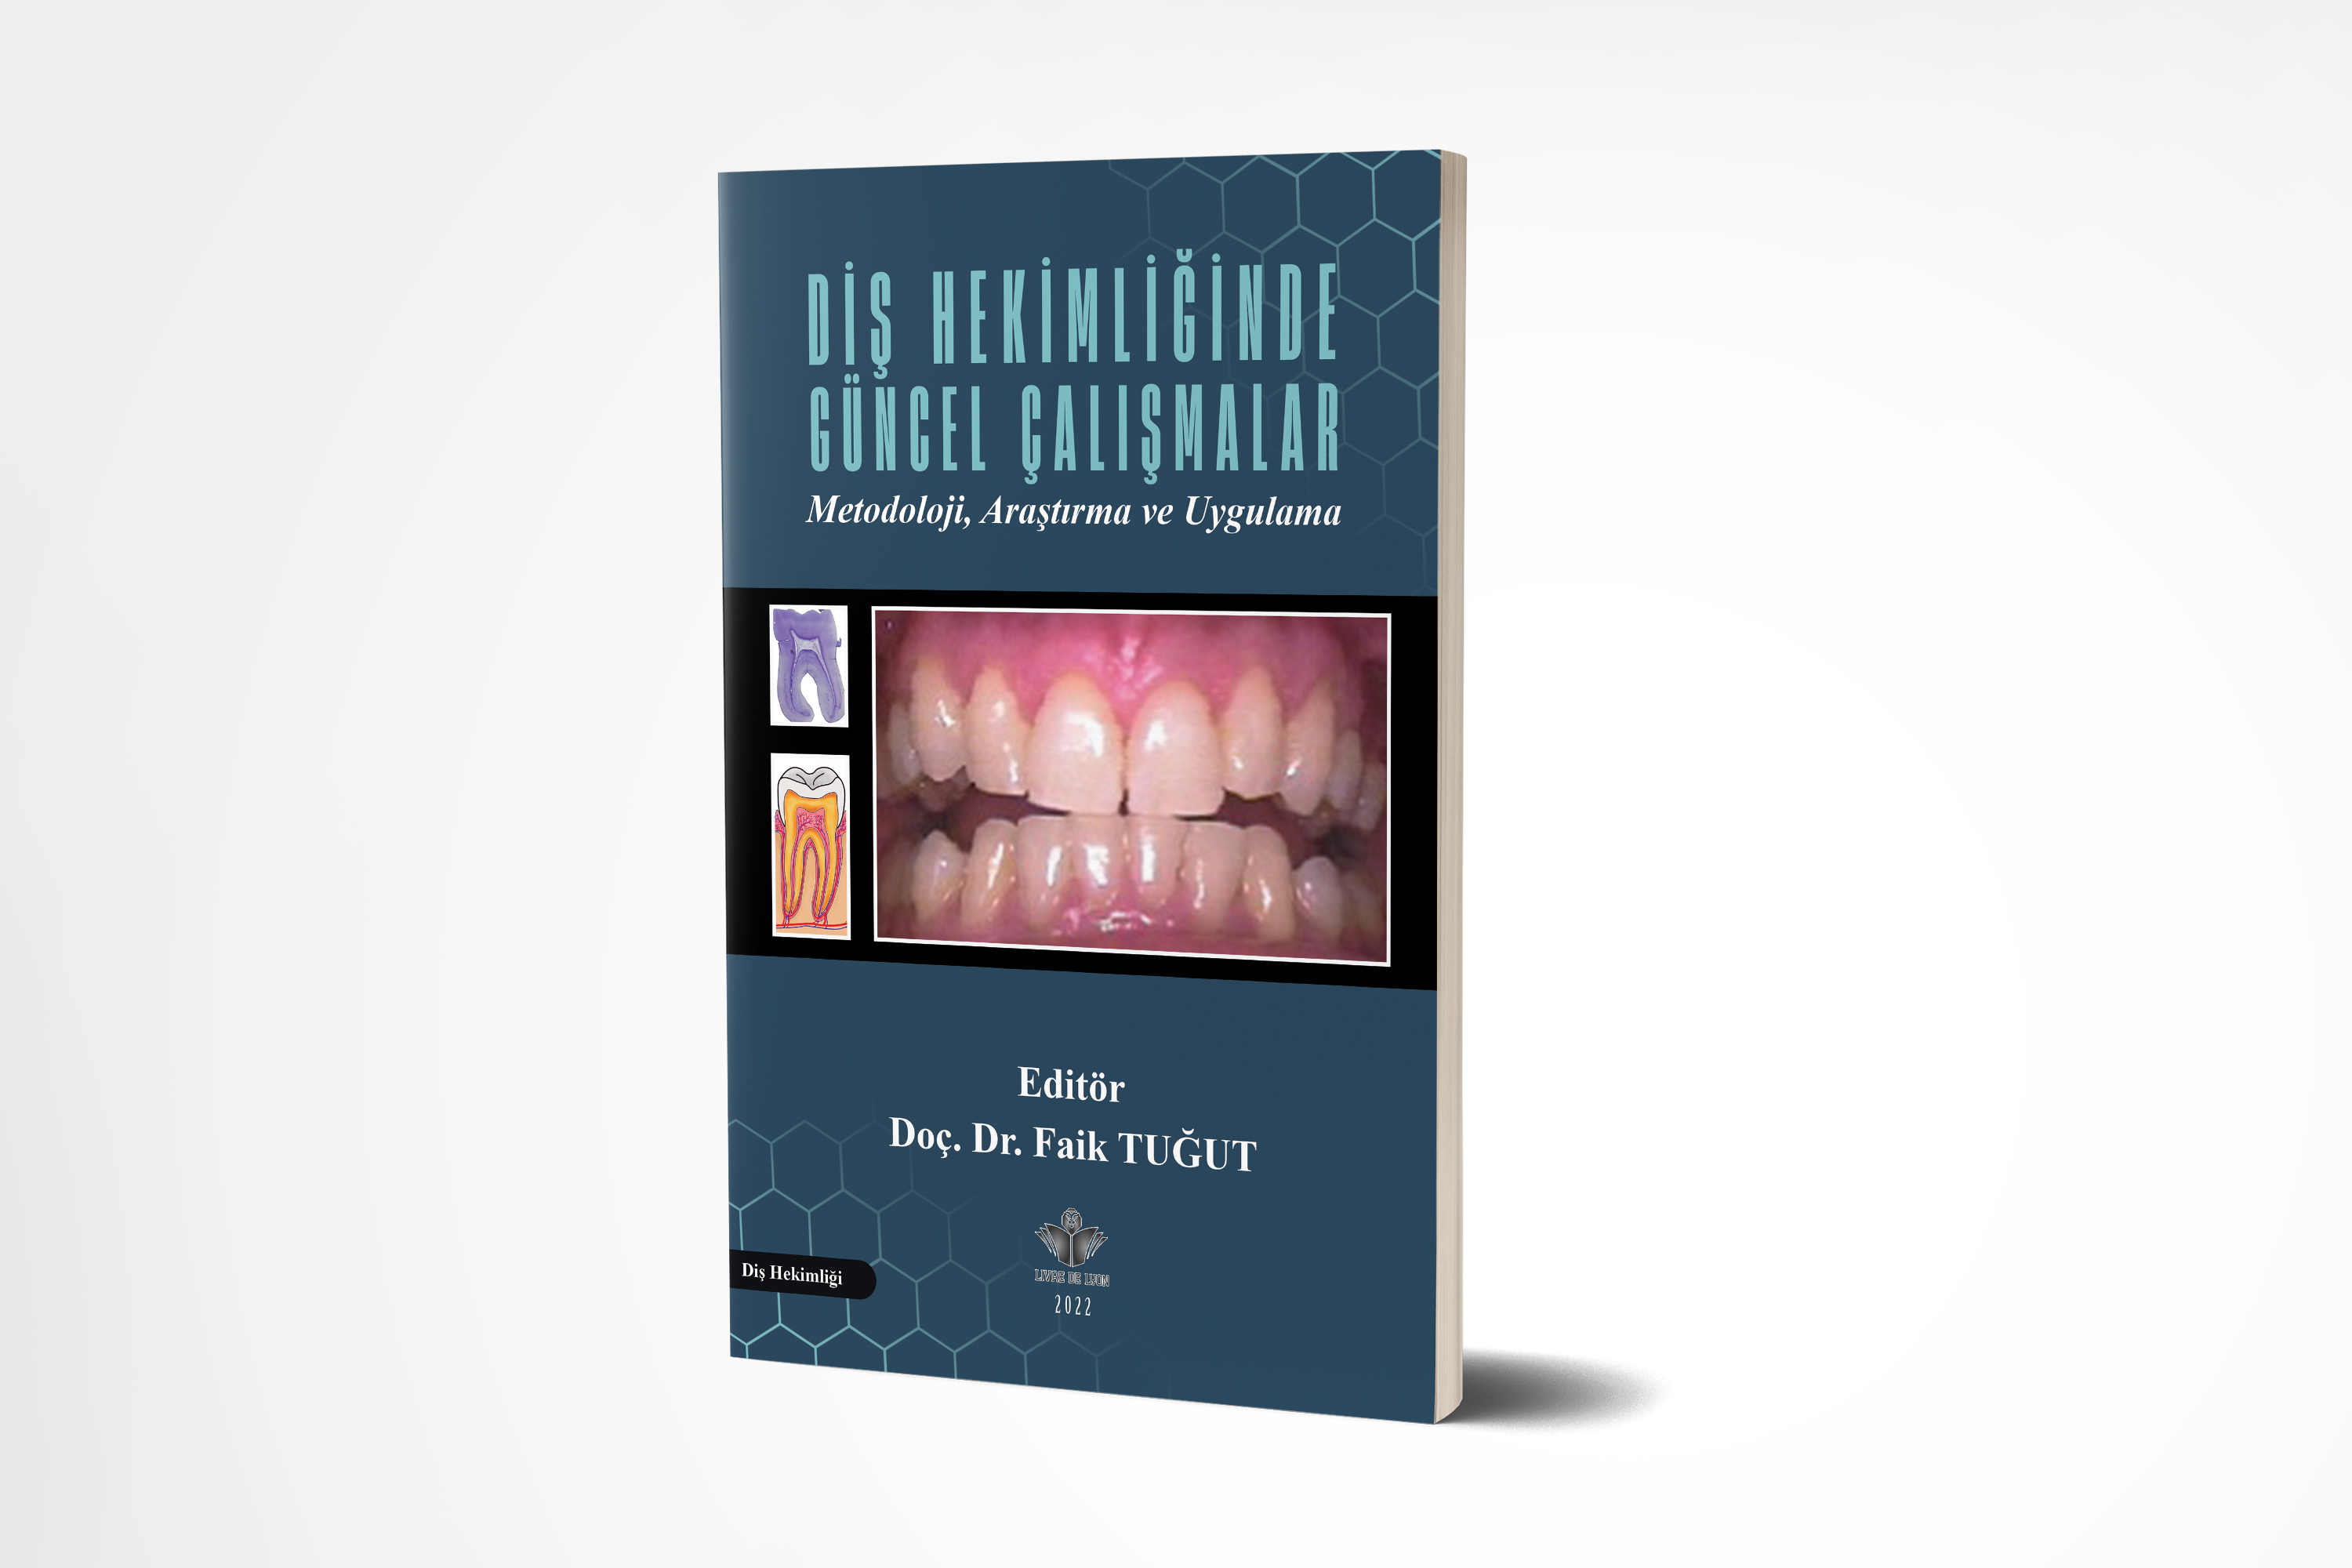 Diş Hekimliğinde Güncel Çalışmalar Metodoloji, Araştırma ve Uygulama